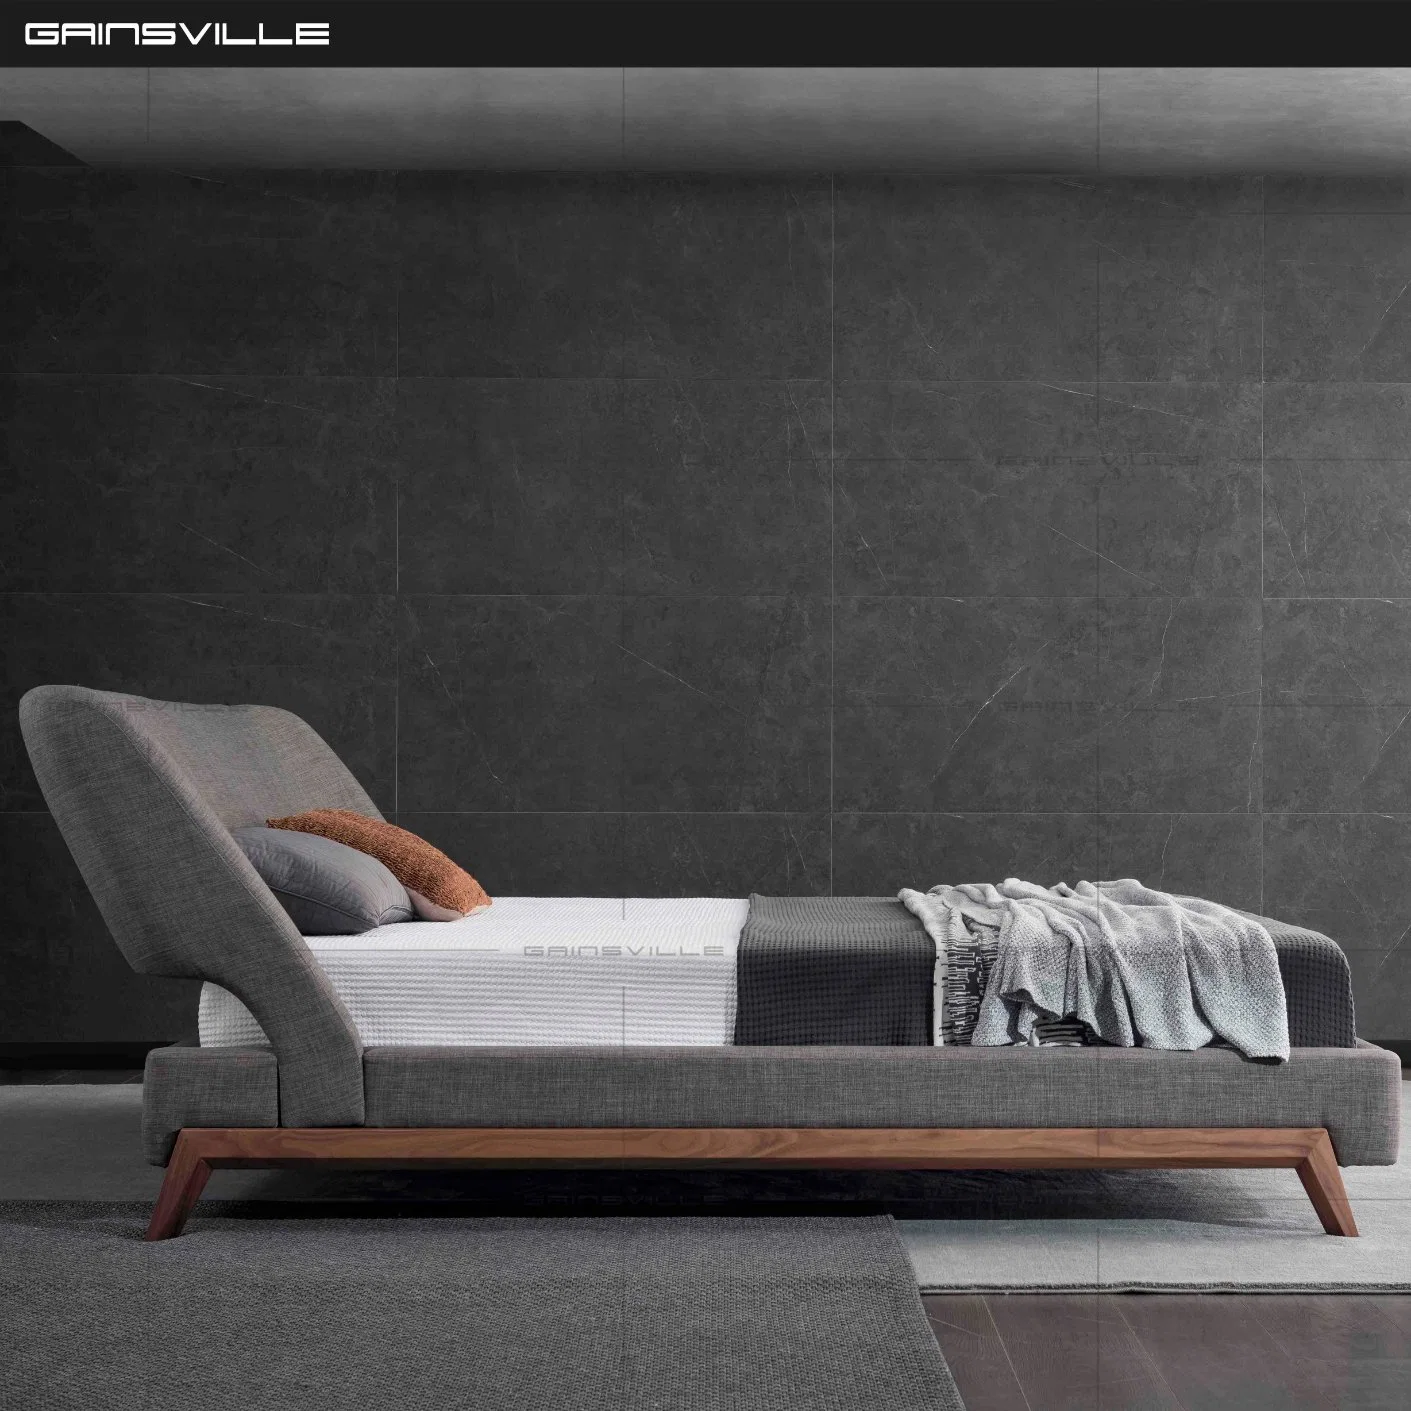 Cama King Size luxo moderno com cama com Nice folheado de madeira de nogueira pernas para Mobiliário doméstico